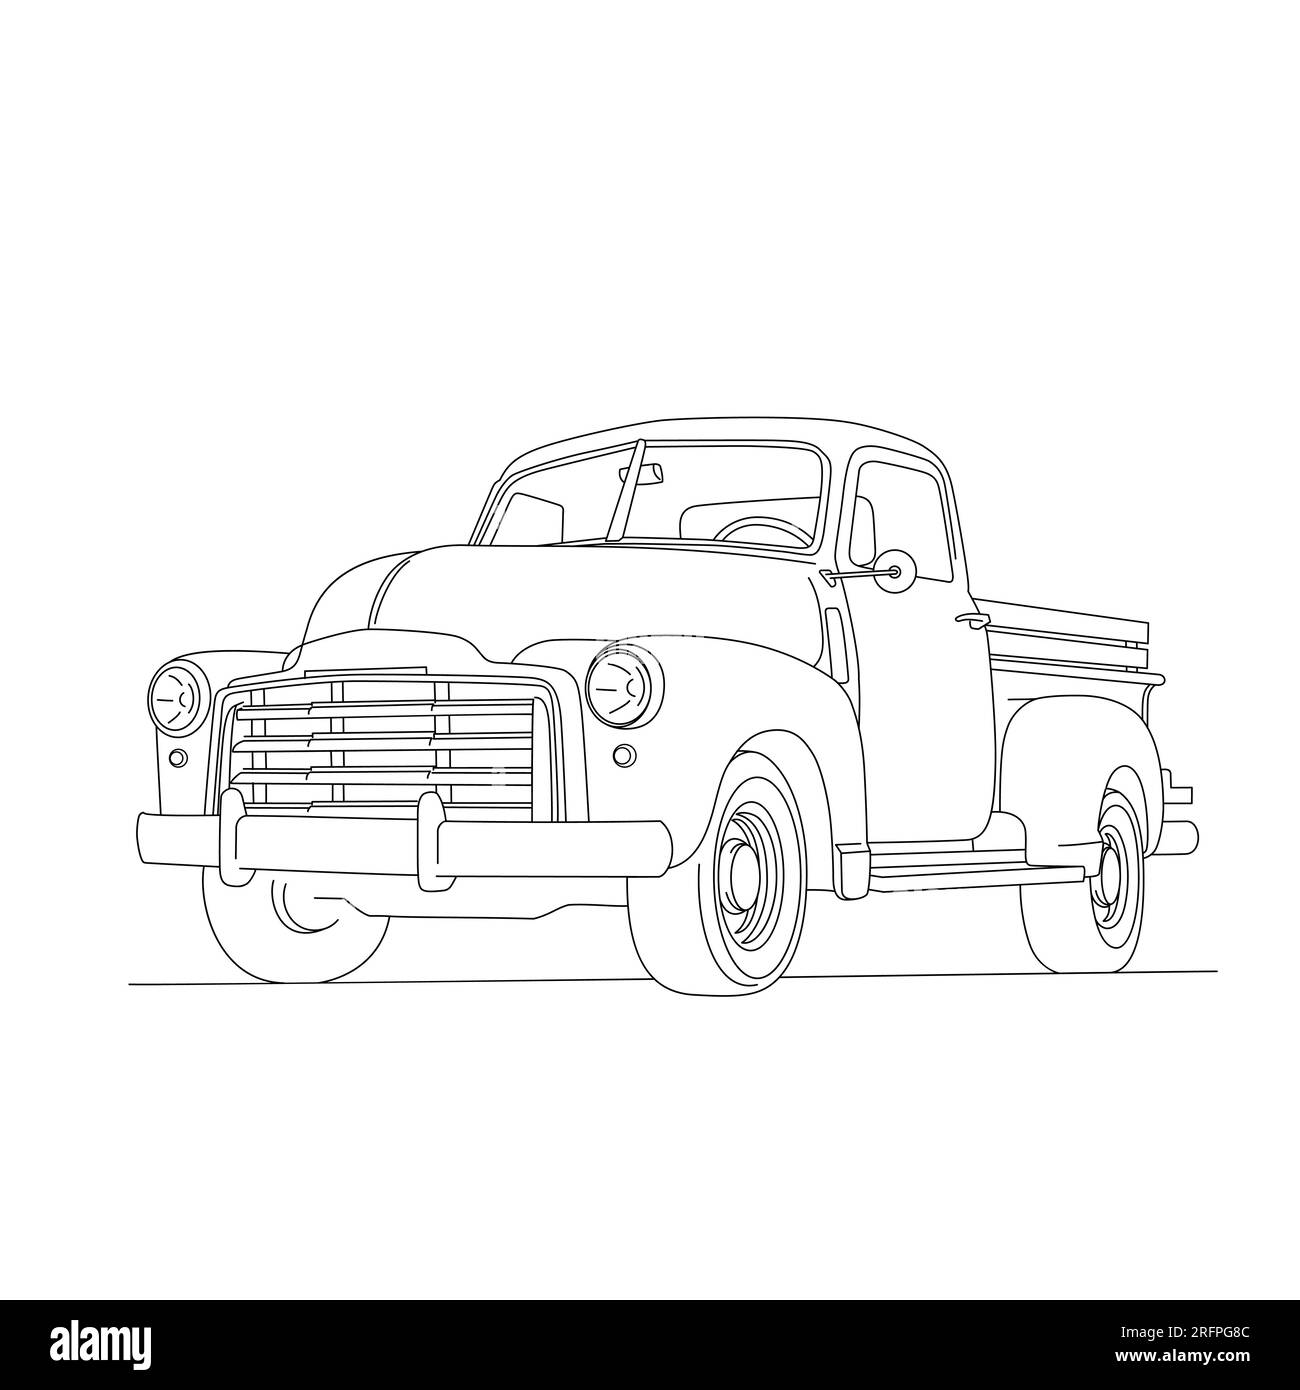 Camioneta clásica. Line art truck. Vector e ilustraciones. Ilustración del Vector